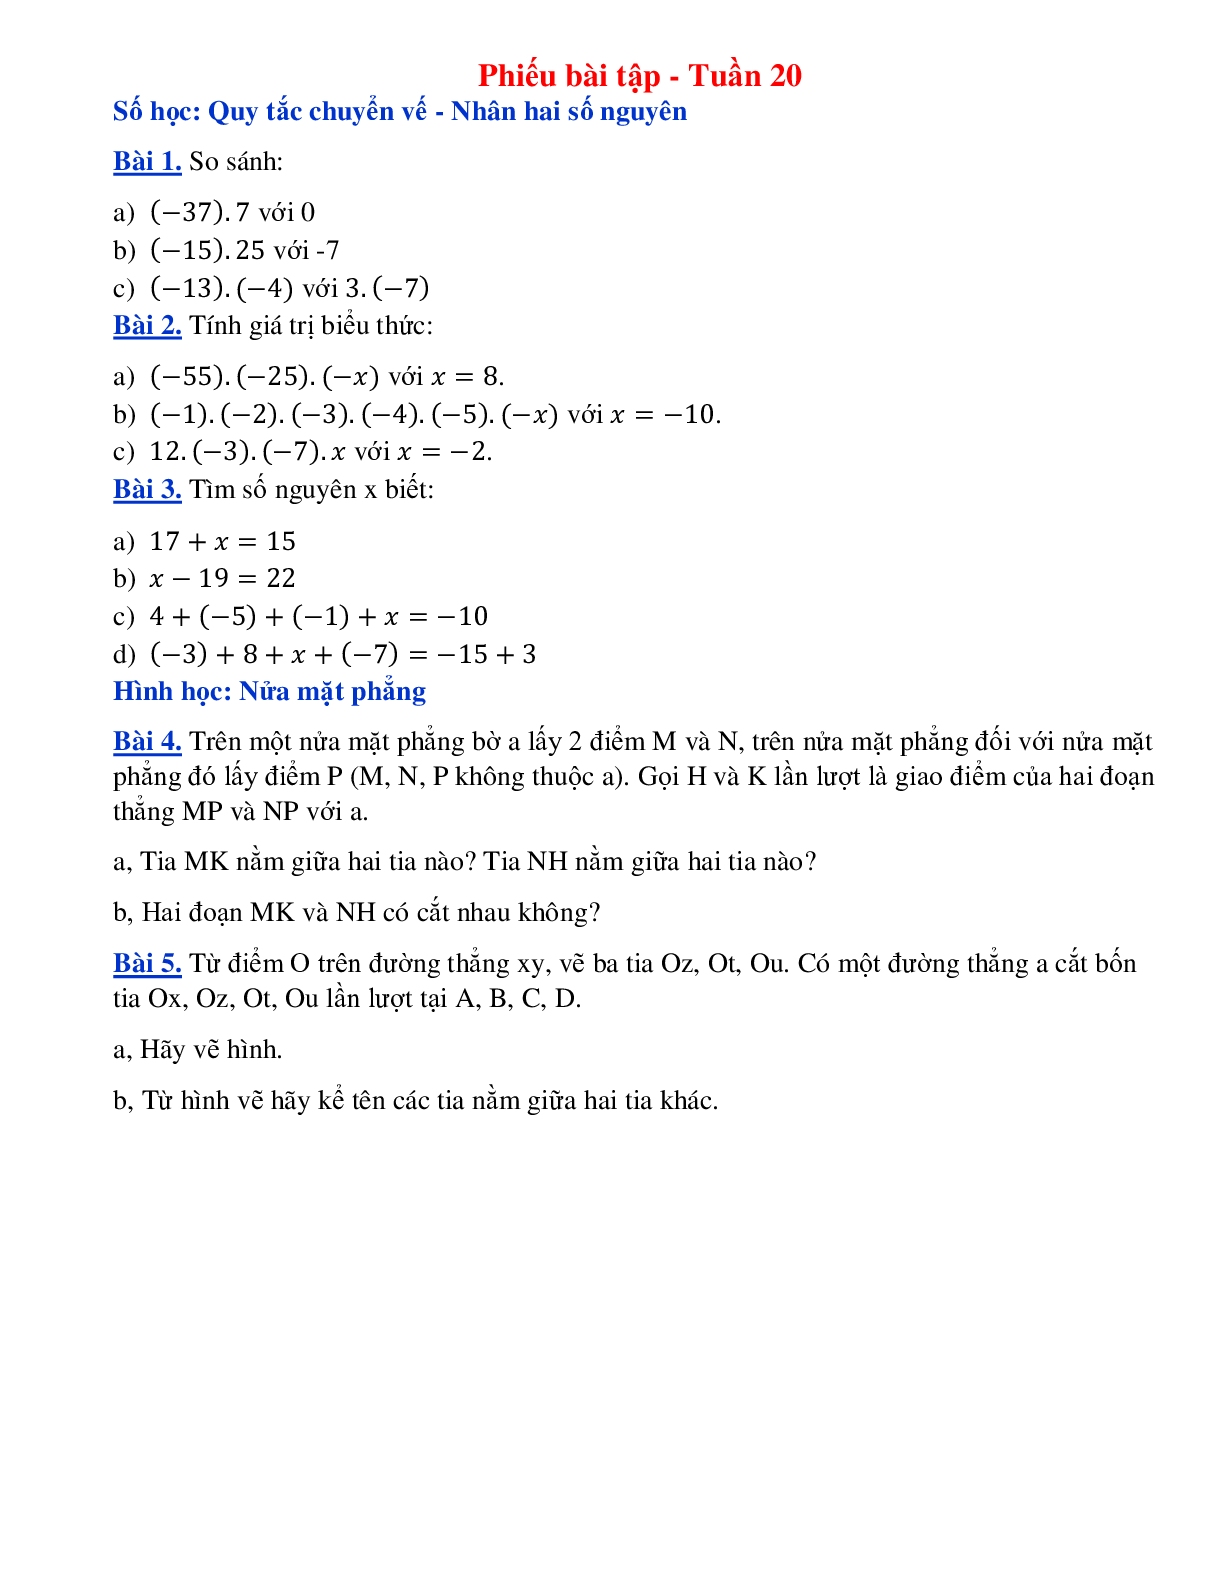 Phiếu bài tập tuần 20 - Toán 6 (trang 1)